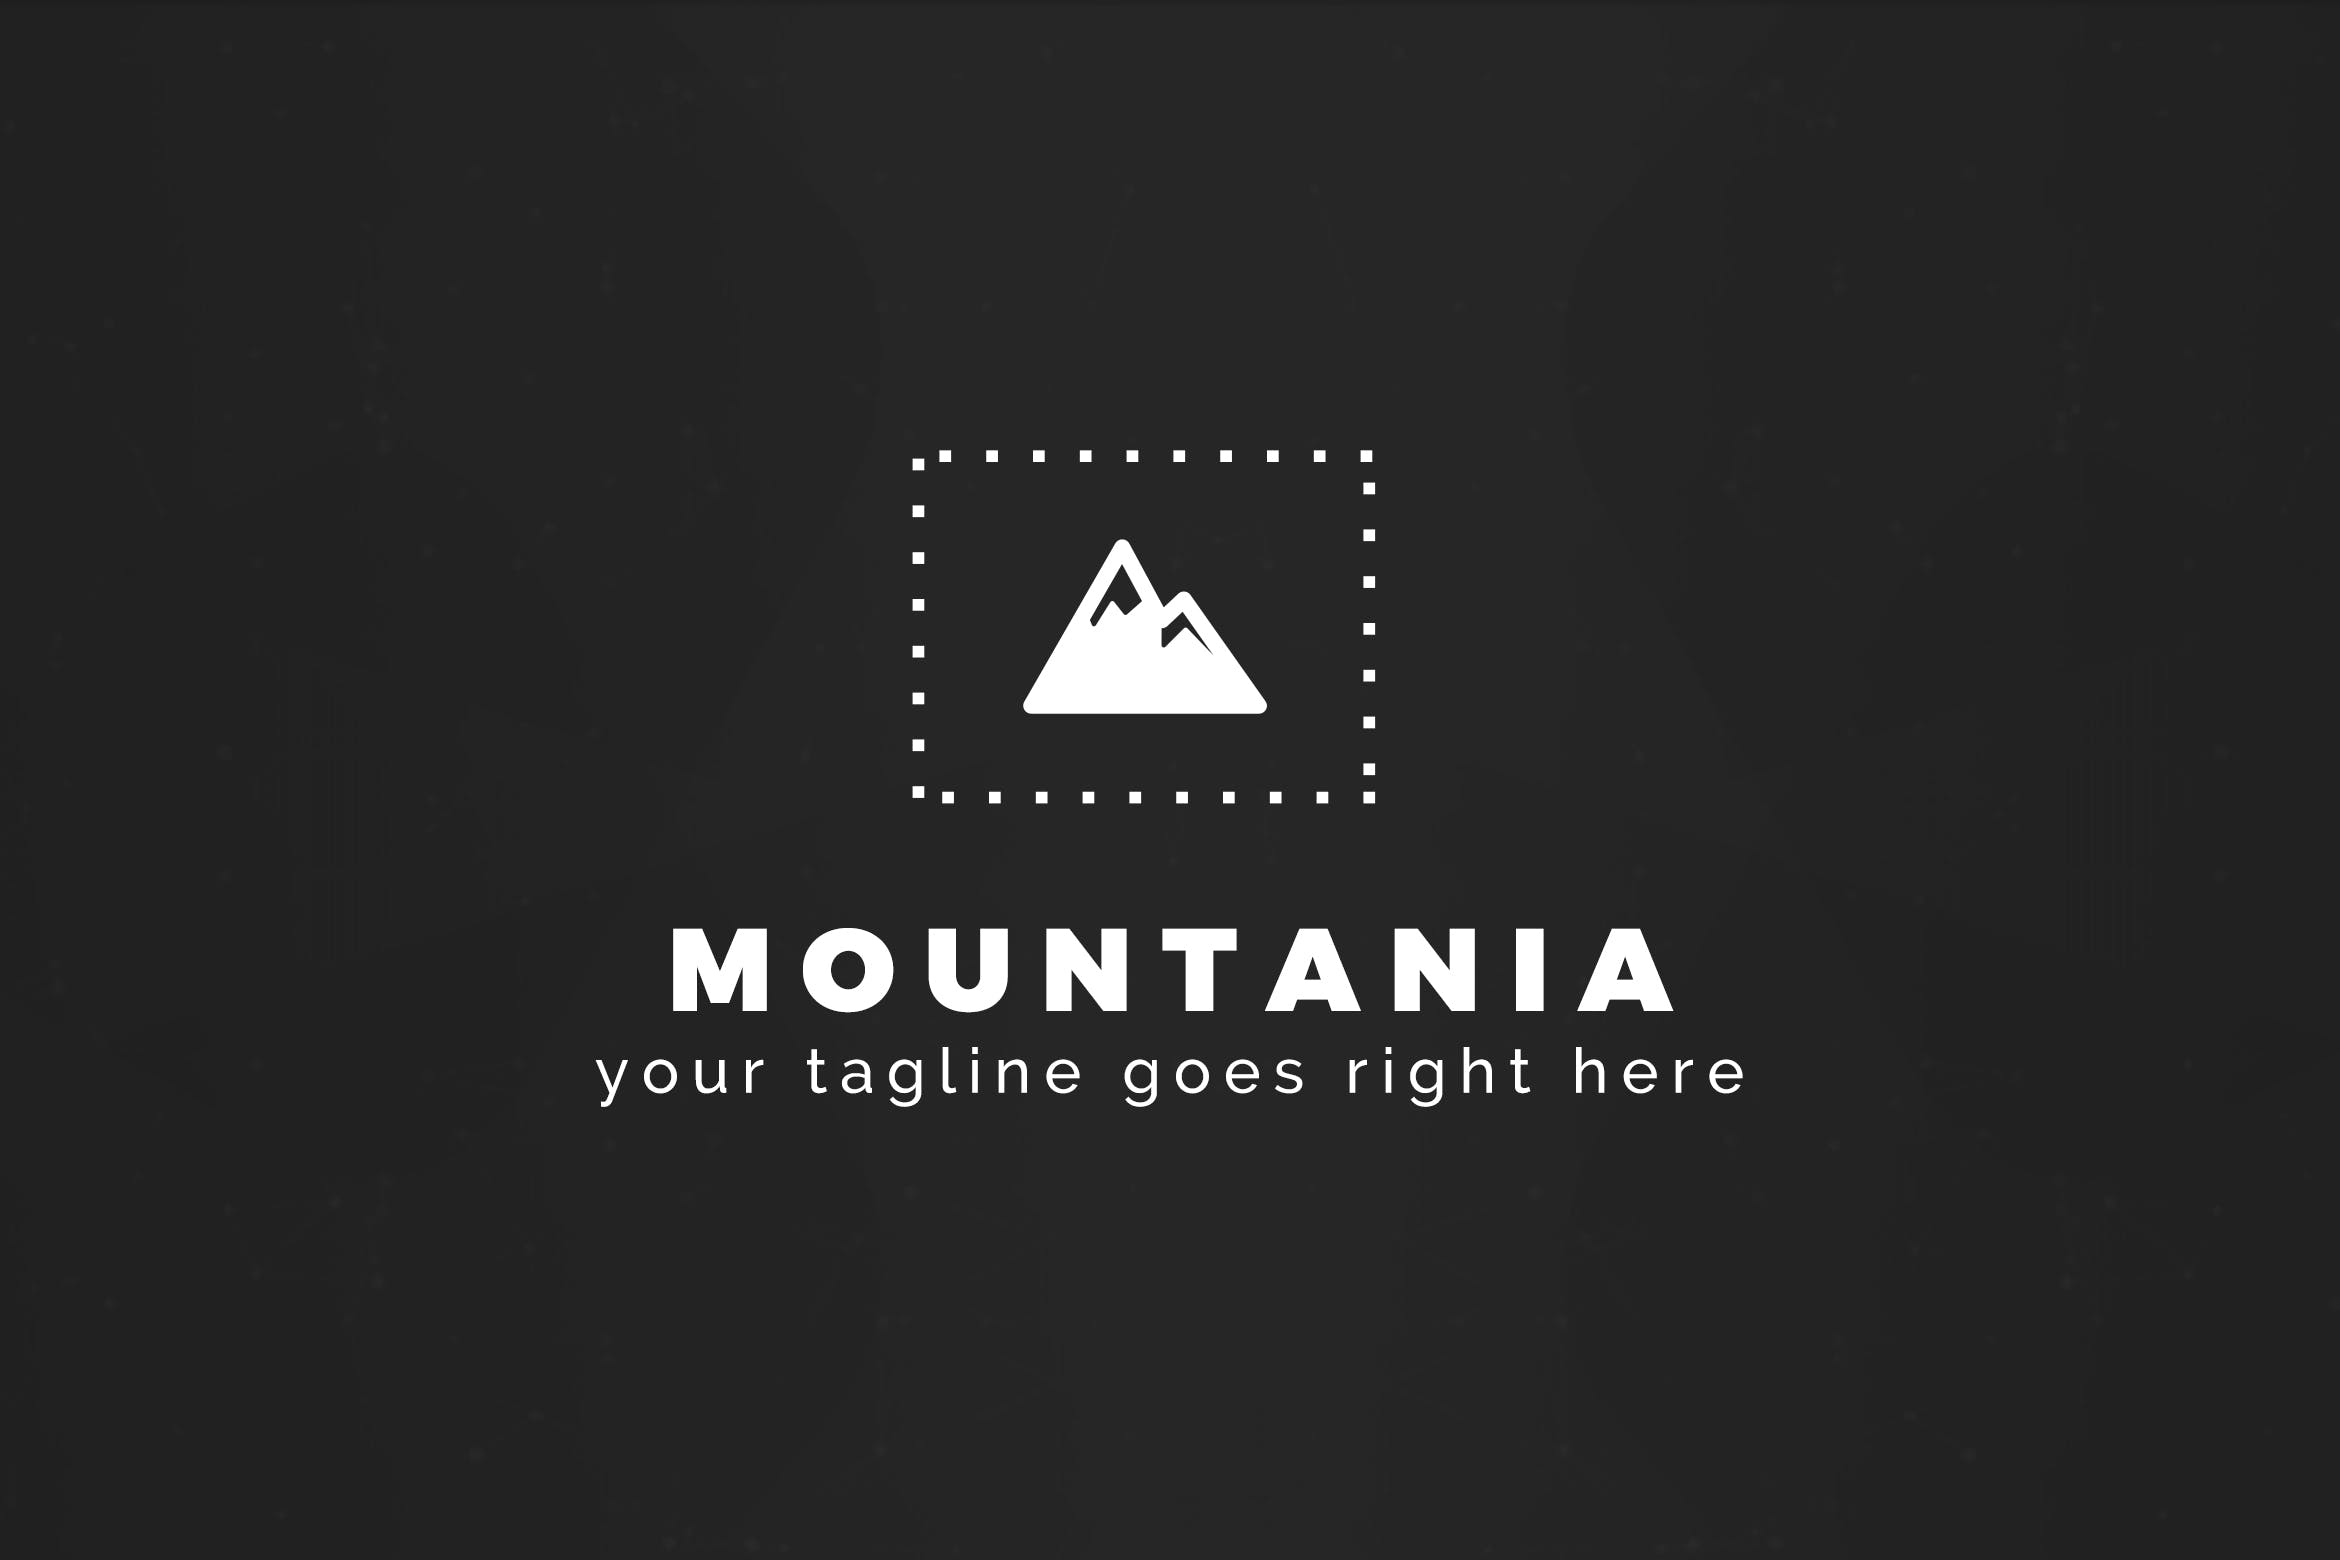 户外运动品牌山岭图形Logo设计蚂蚁素材精选模板 Mountania – Premium Logo Template插图